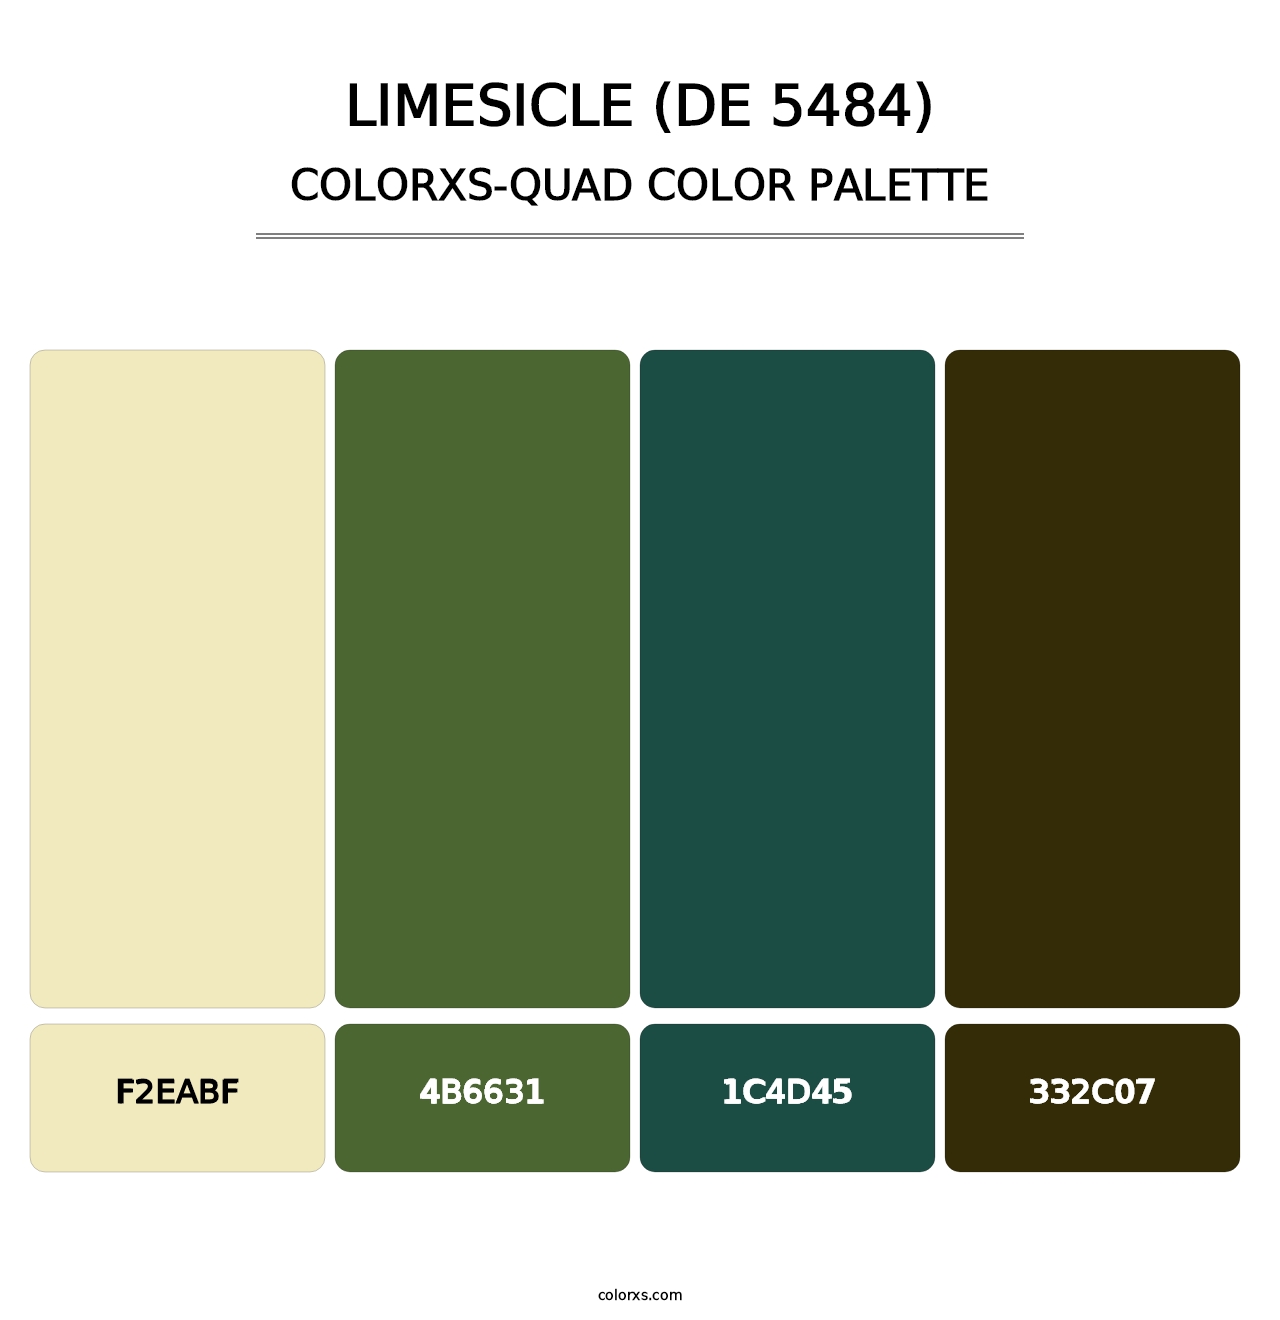 Limesicle (DE 5484) - Colorxs Quad Palette